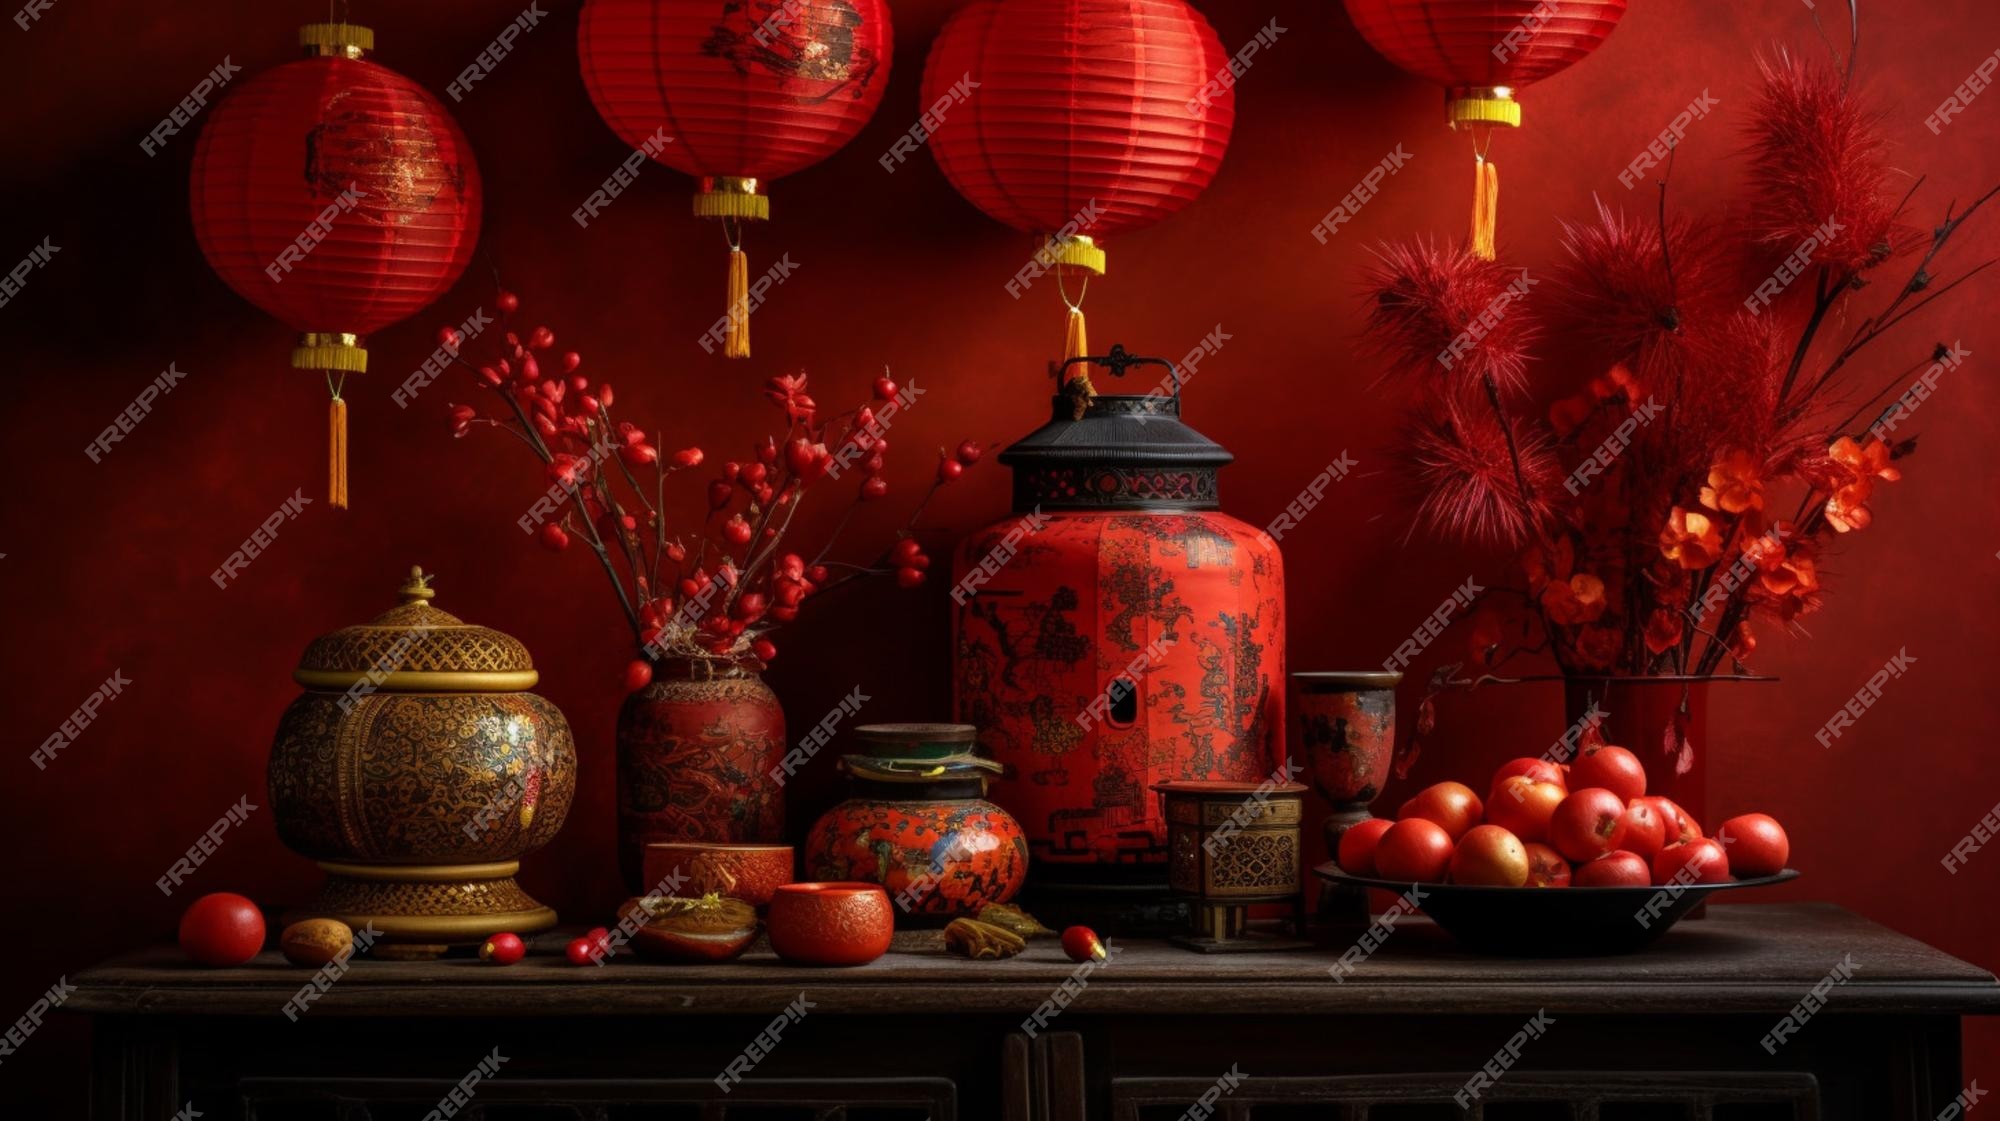 Un Mur Rouge Avec Des Décorations Chinoises Et Un Vase De Fleurs.